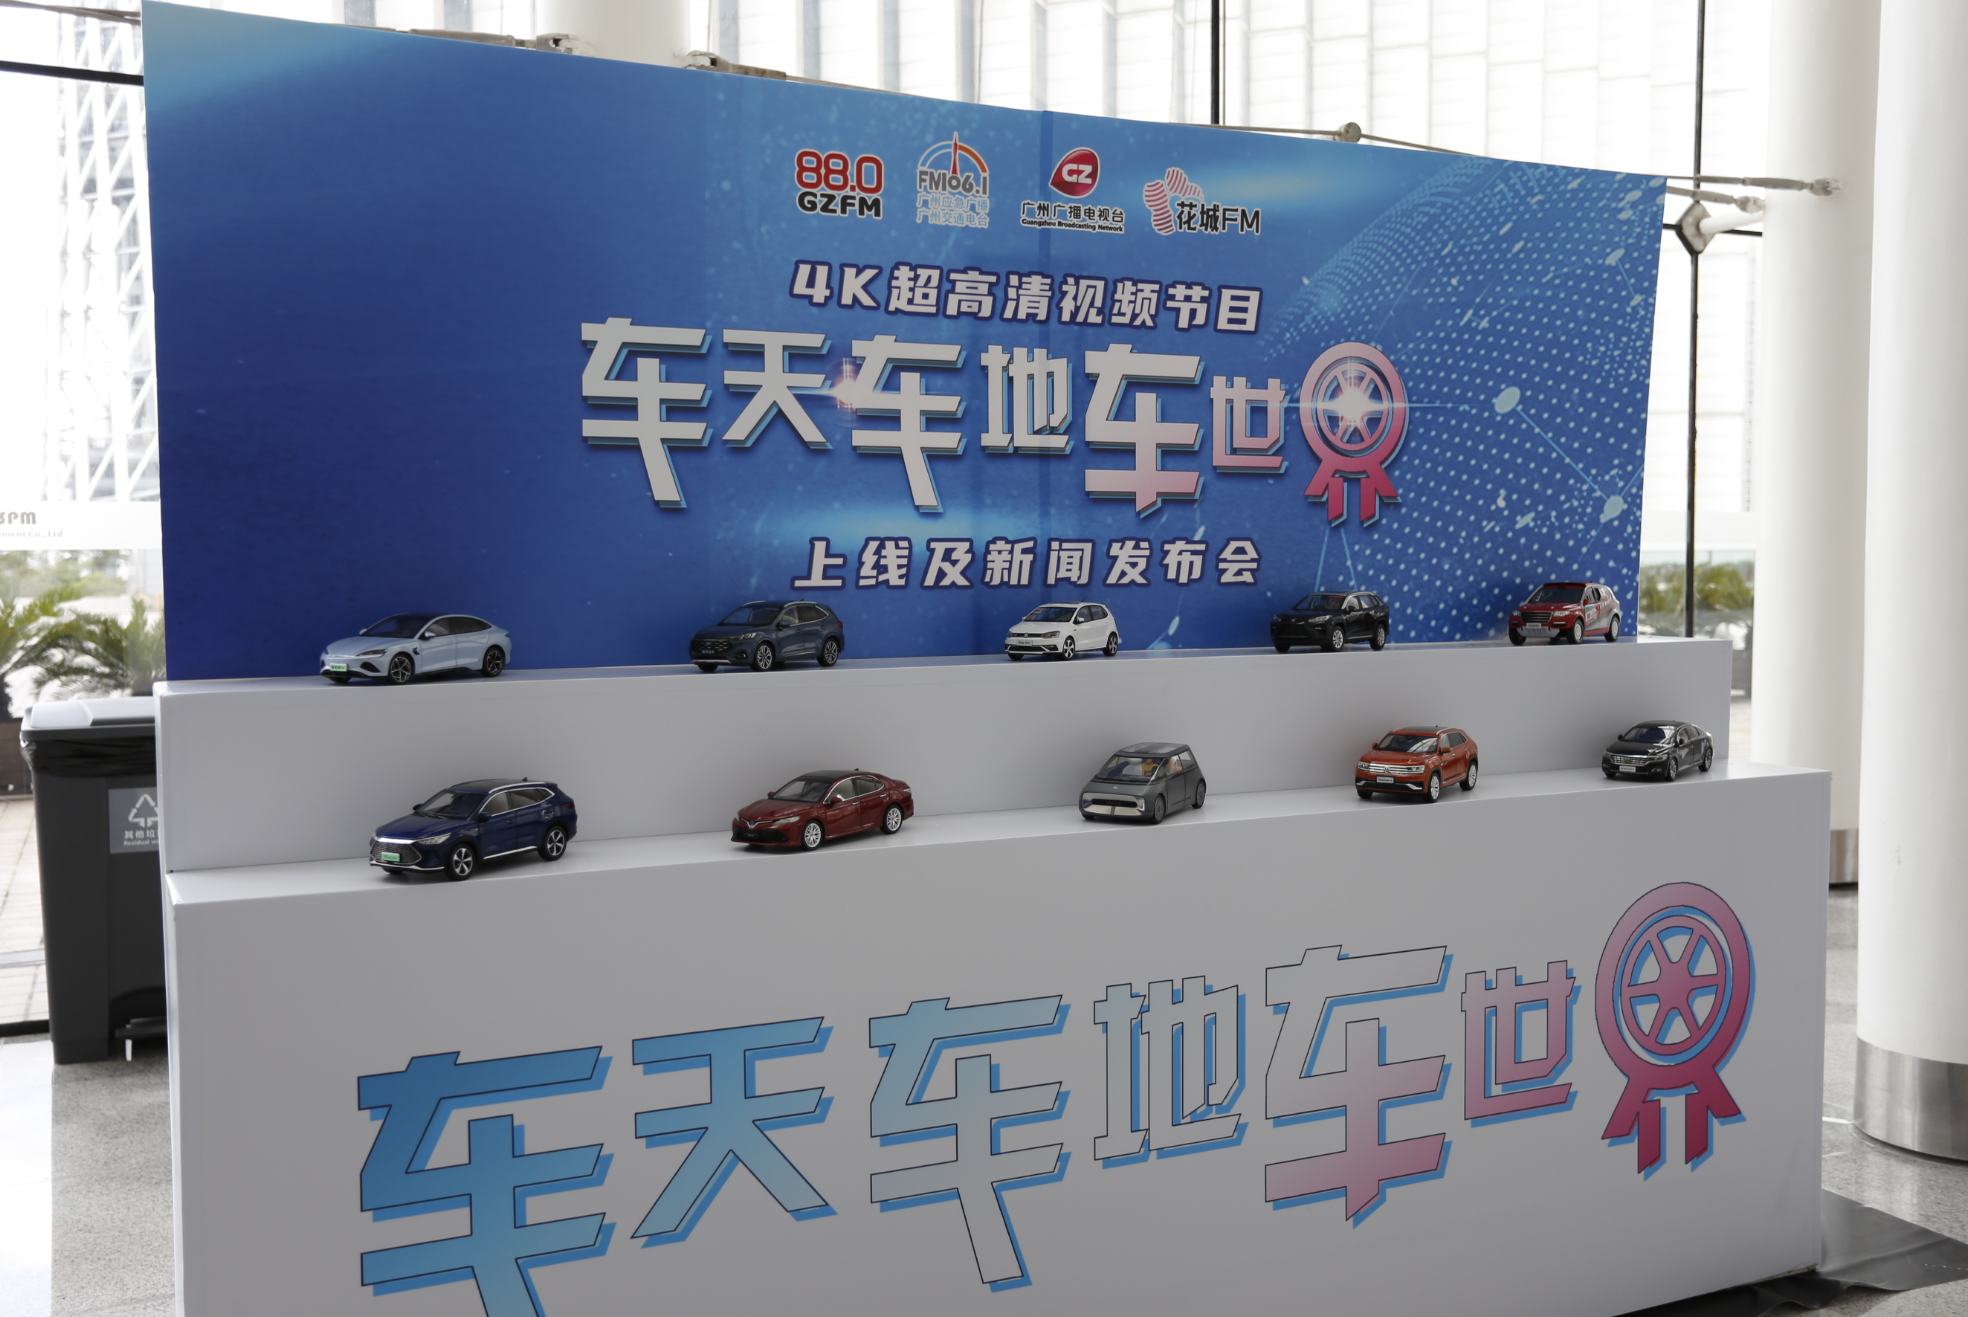 广州首个4K高清视频汽车专栏节目《车天车地车世界》9月登陆电视